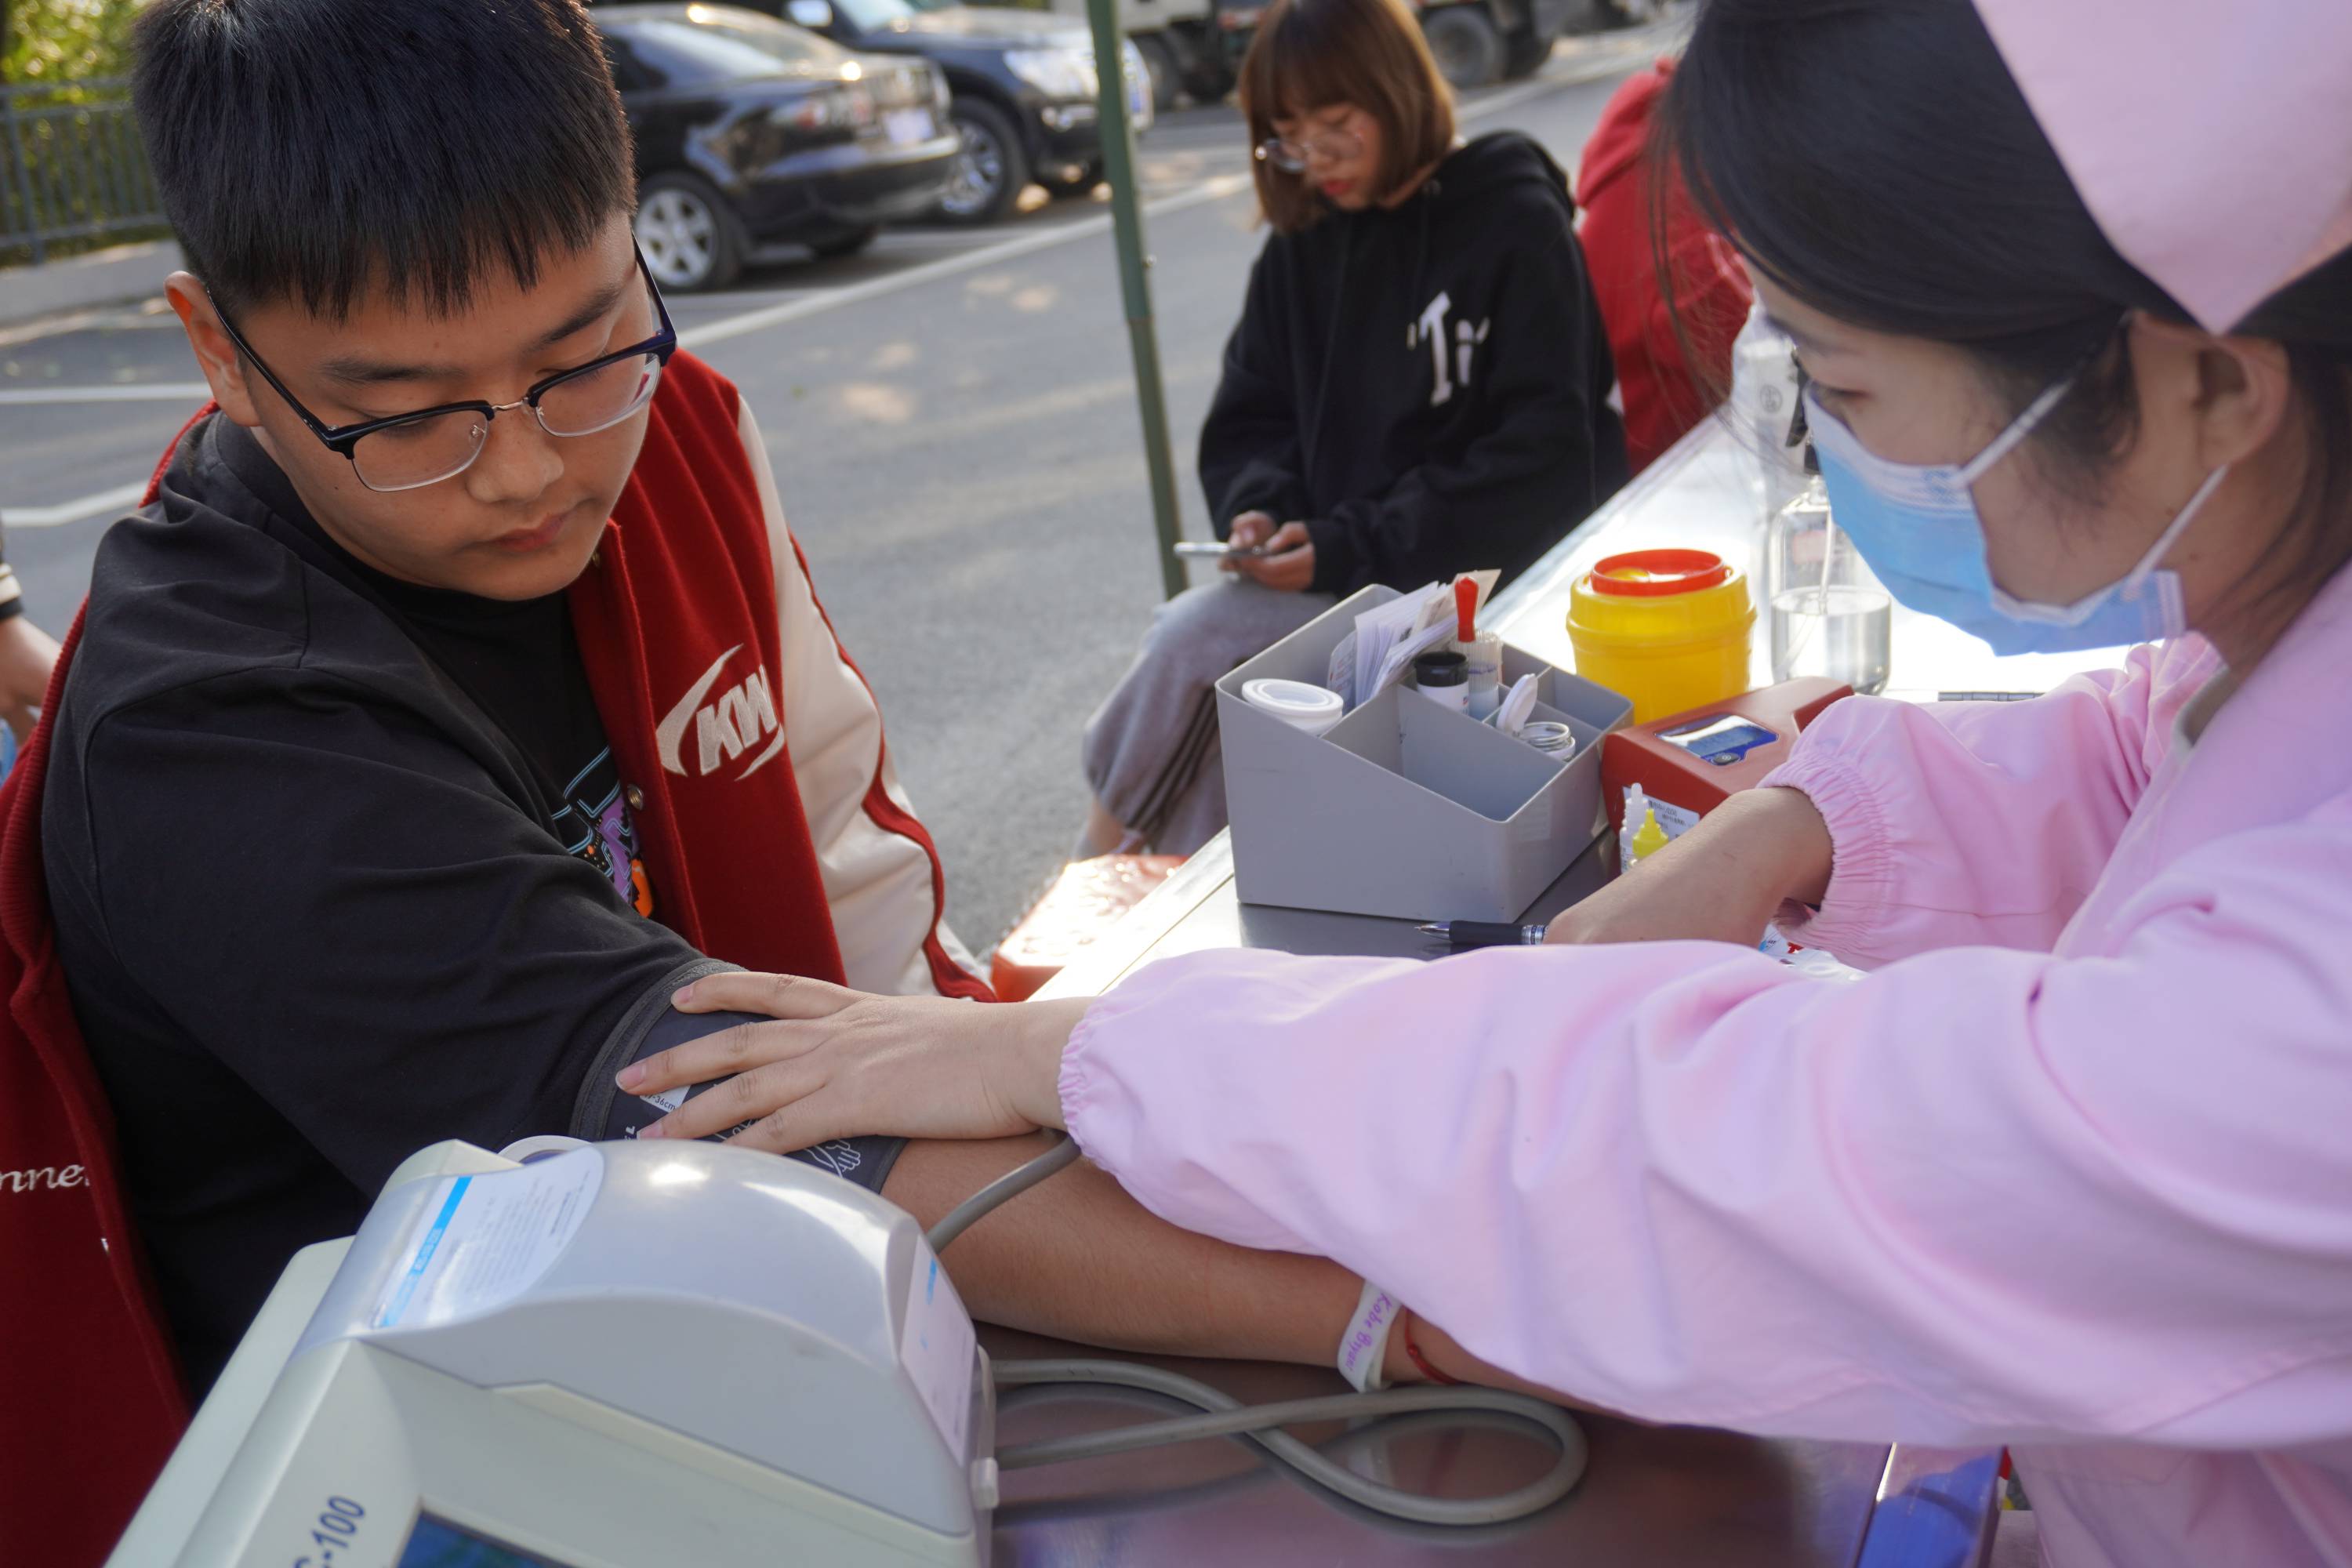 2021年世界献血者日宣传海报正式发布_深圳新闻网